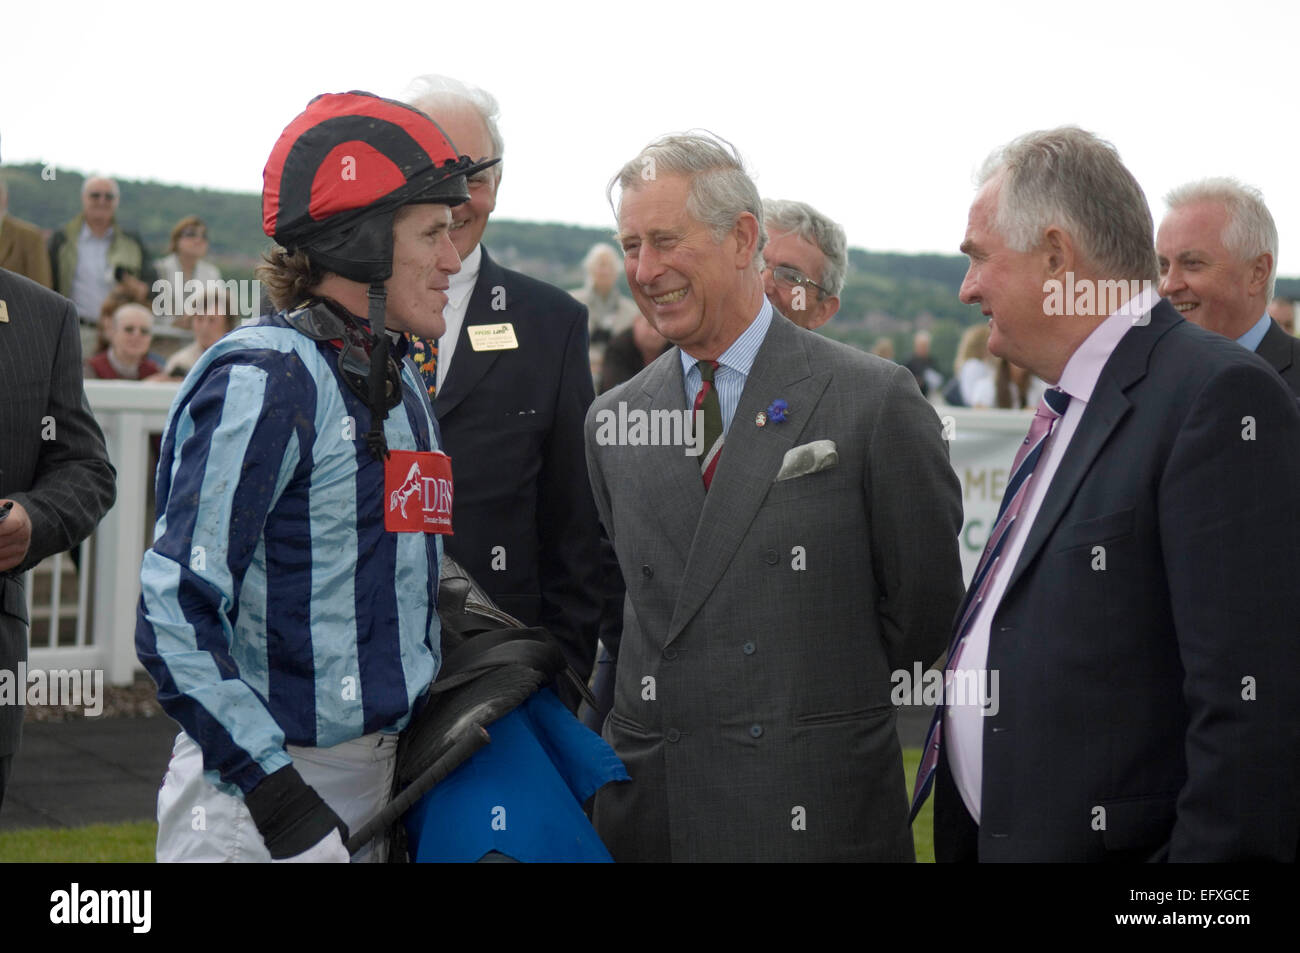 Tony McCoy, der Champion jockey Wer hat angekündigt, dass er in den Ruhestand aus dem Rennsport am Ende der Saison. Er ist abgebildet, im Gespräch mit Prinz Charles in Ffos Las Pferderennbahn in Carmarthenshire, Südwesten von Wales im Juni 2011 der Prinz Wohltätigkeitsorganisationen in Wales Renntag besuchte. Stockfoto